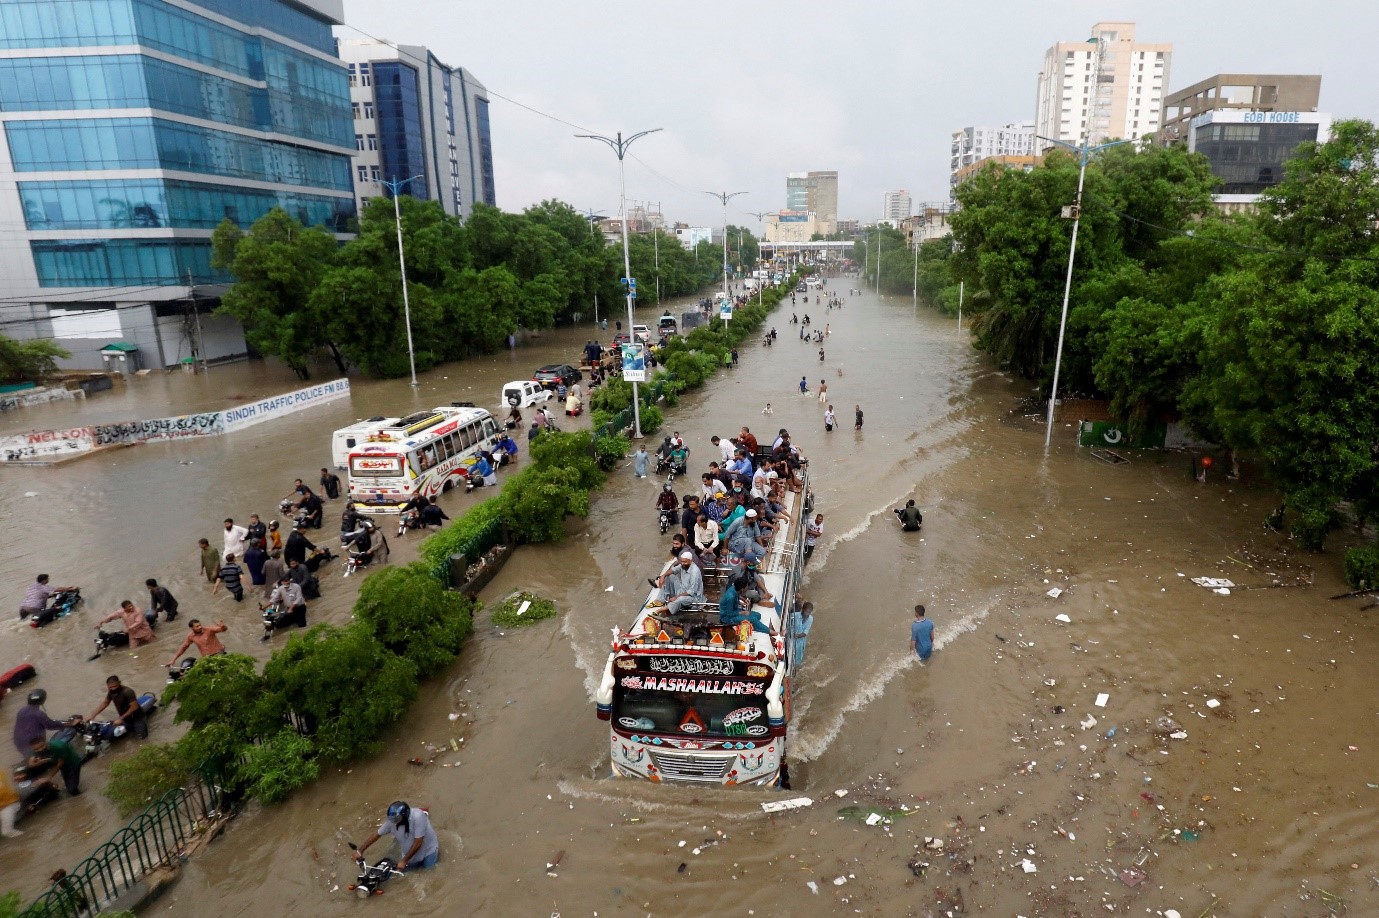 Cảnh tượng nhiều người ngồi trên nóc xe buýt trong khi những người khác đang lội qua con đường ngập nước trong bối cảnh dịch bệnh COVID-19 đang bùng phát tại Karachi, Pakistan ngày 27/8/2020. Ảnh: Reuters